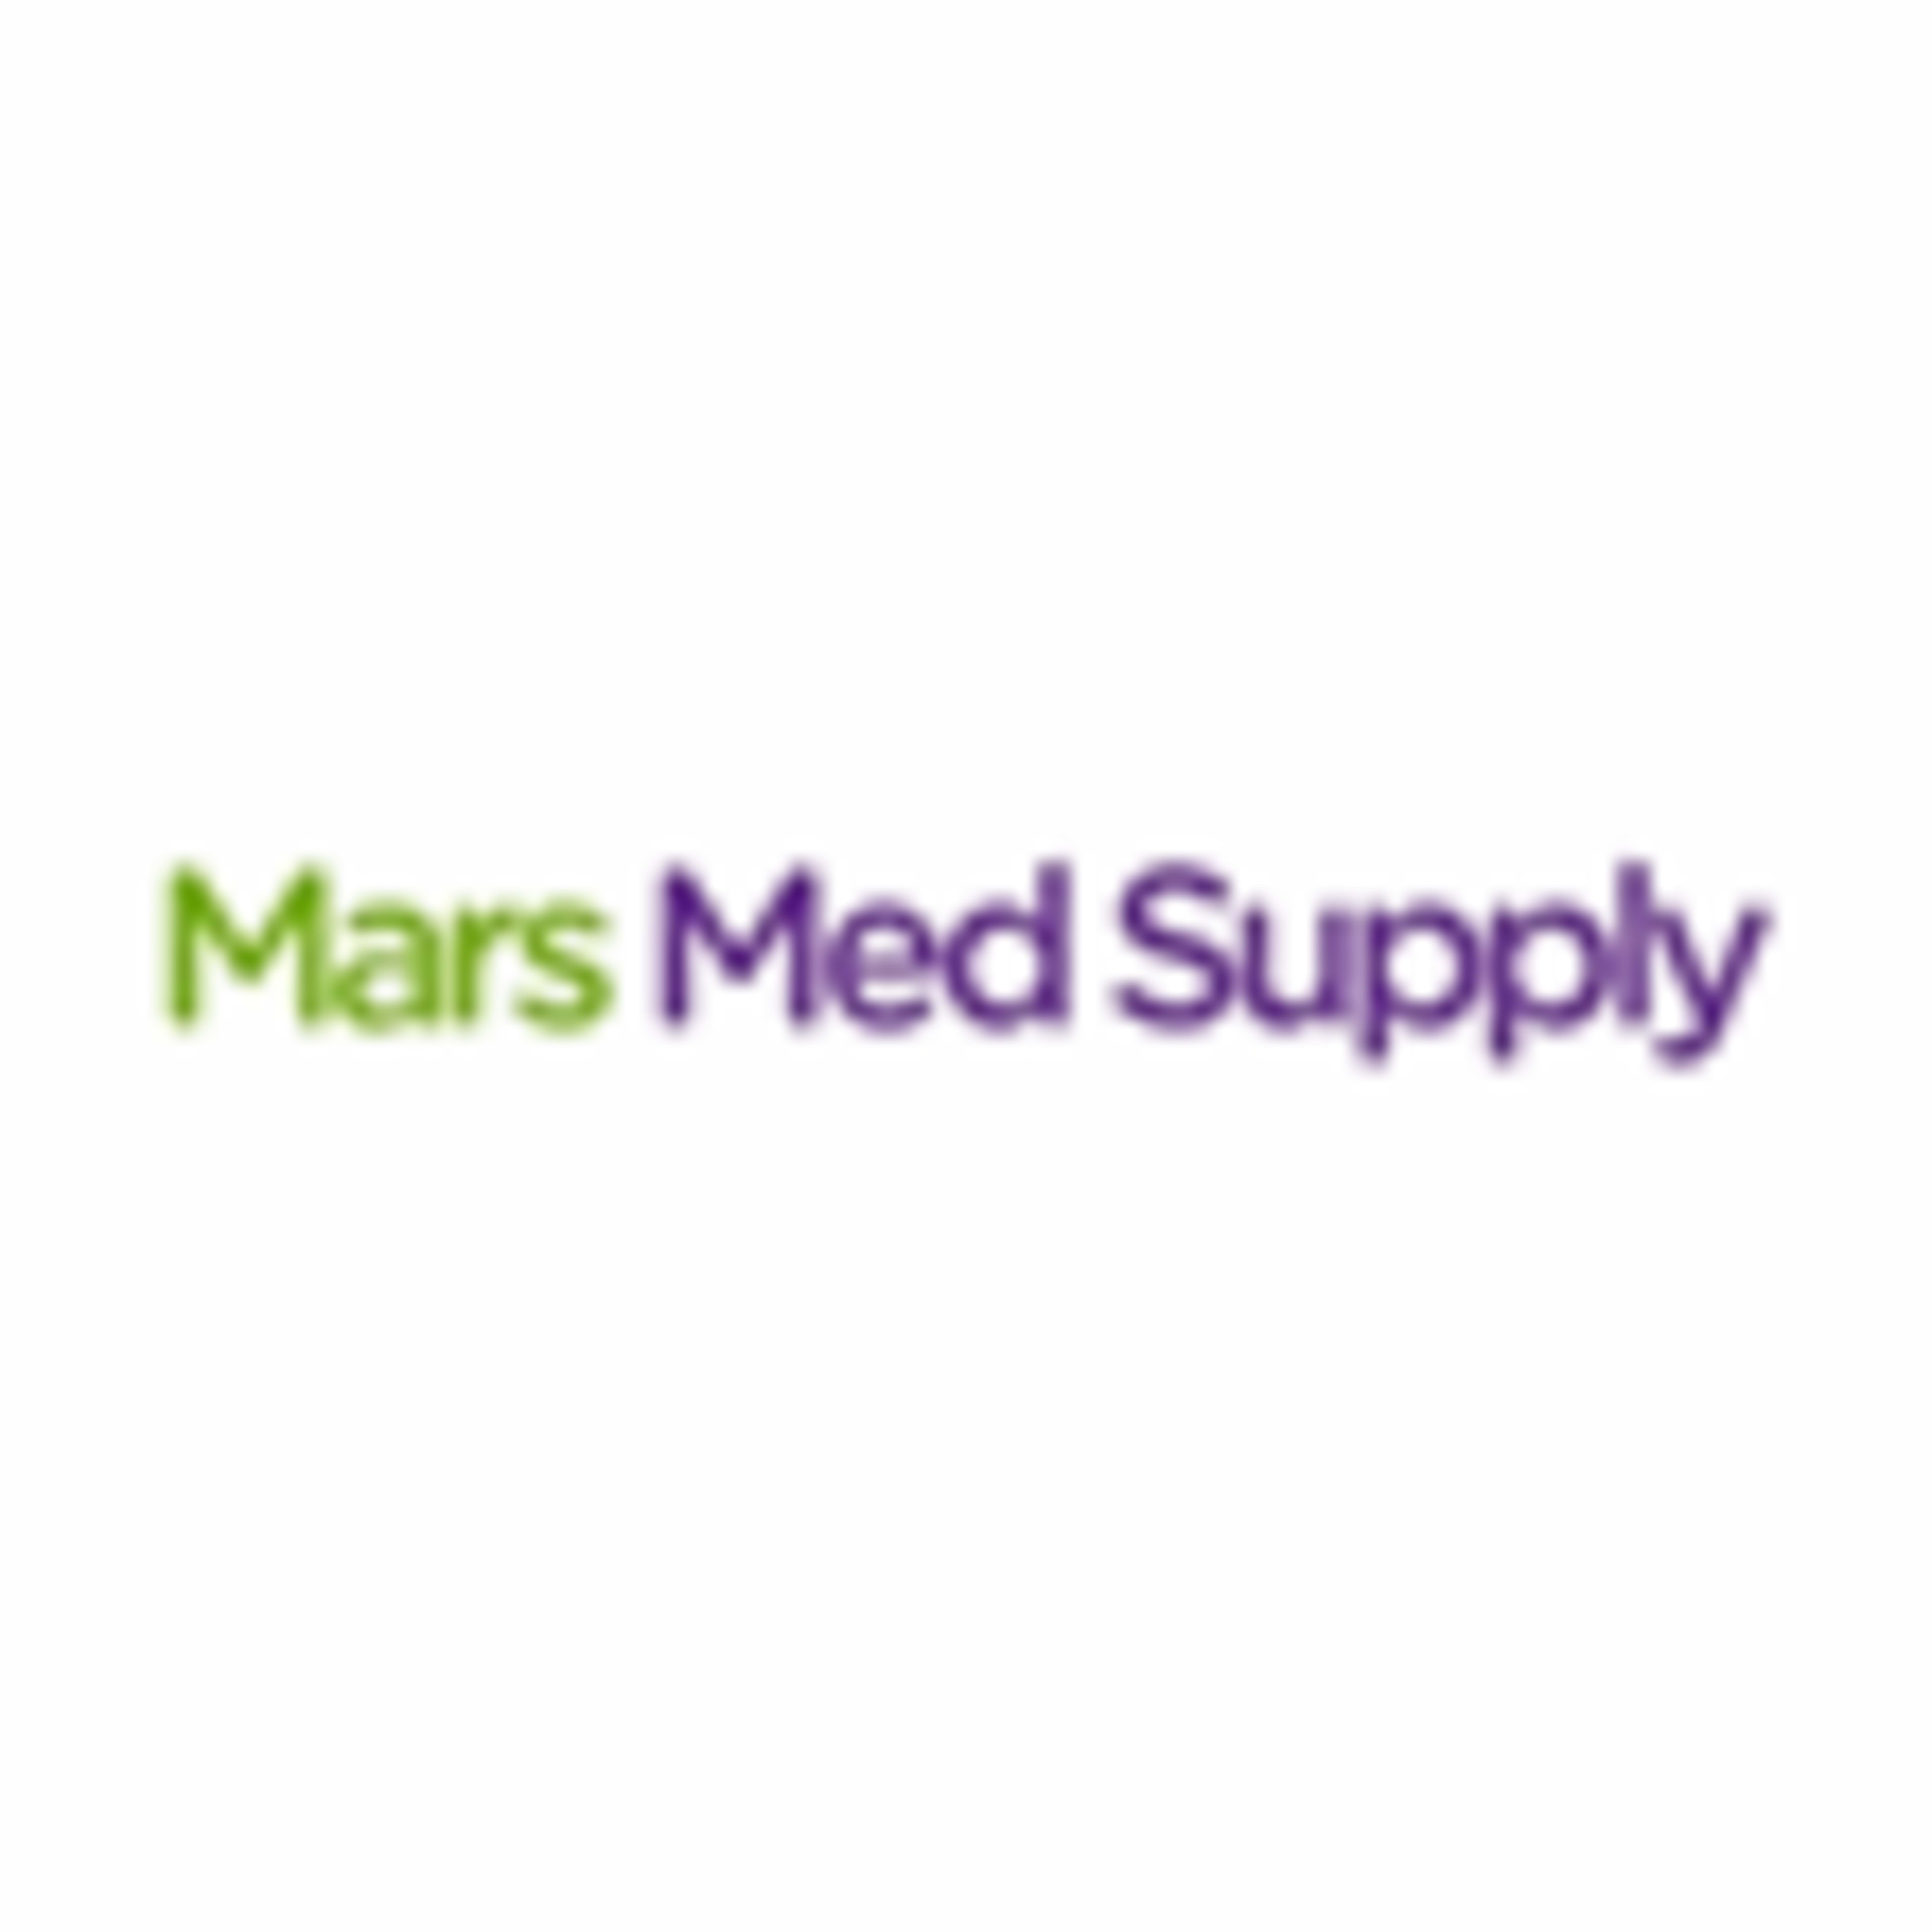 Mars Med SupplyCode